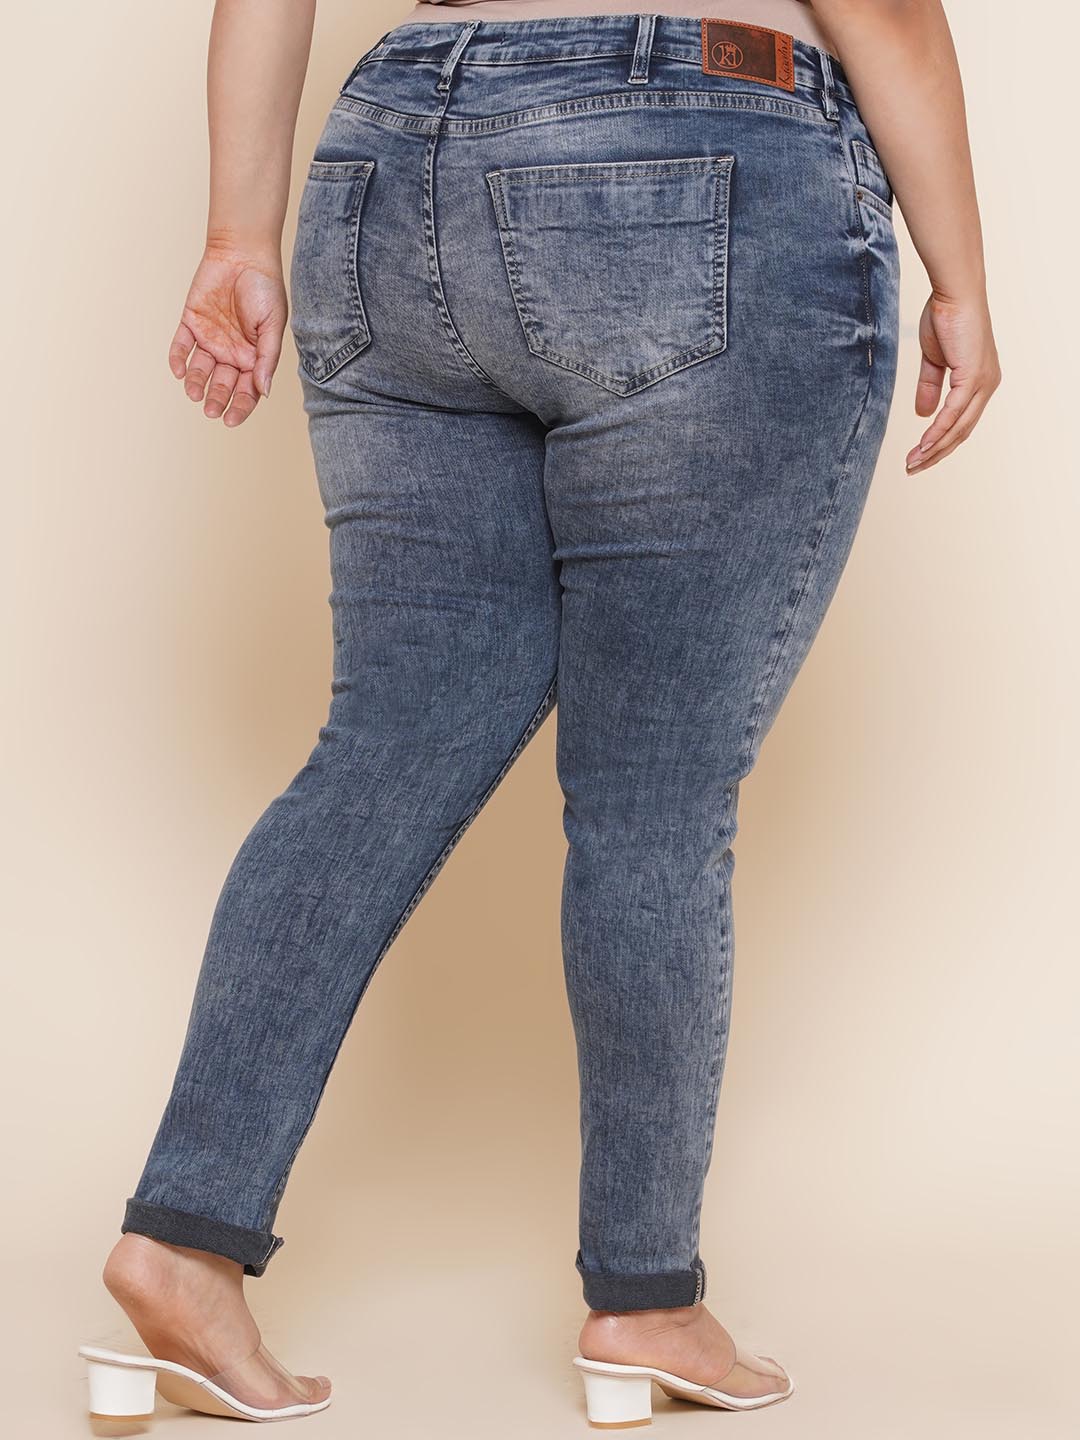 bottomwear_kiaahvi/jeans/KIJ6007/kij6007-5.jpg